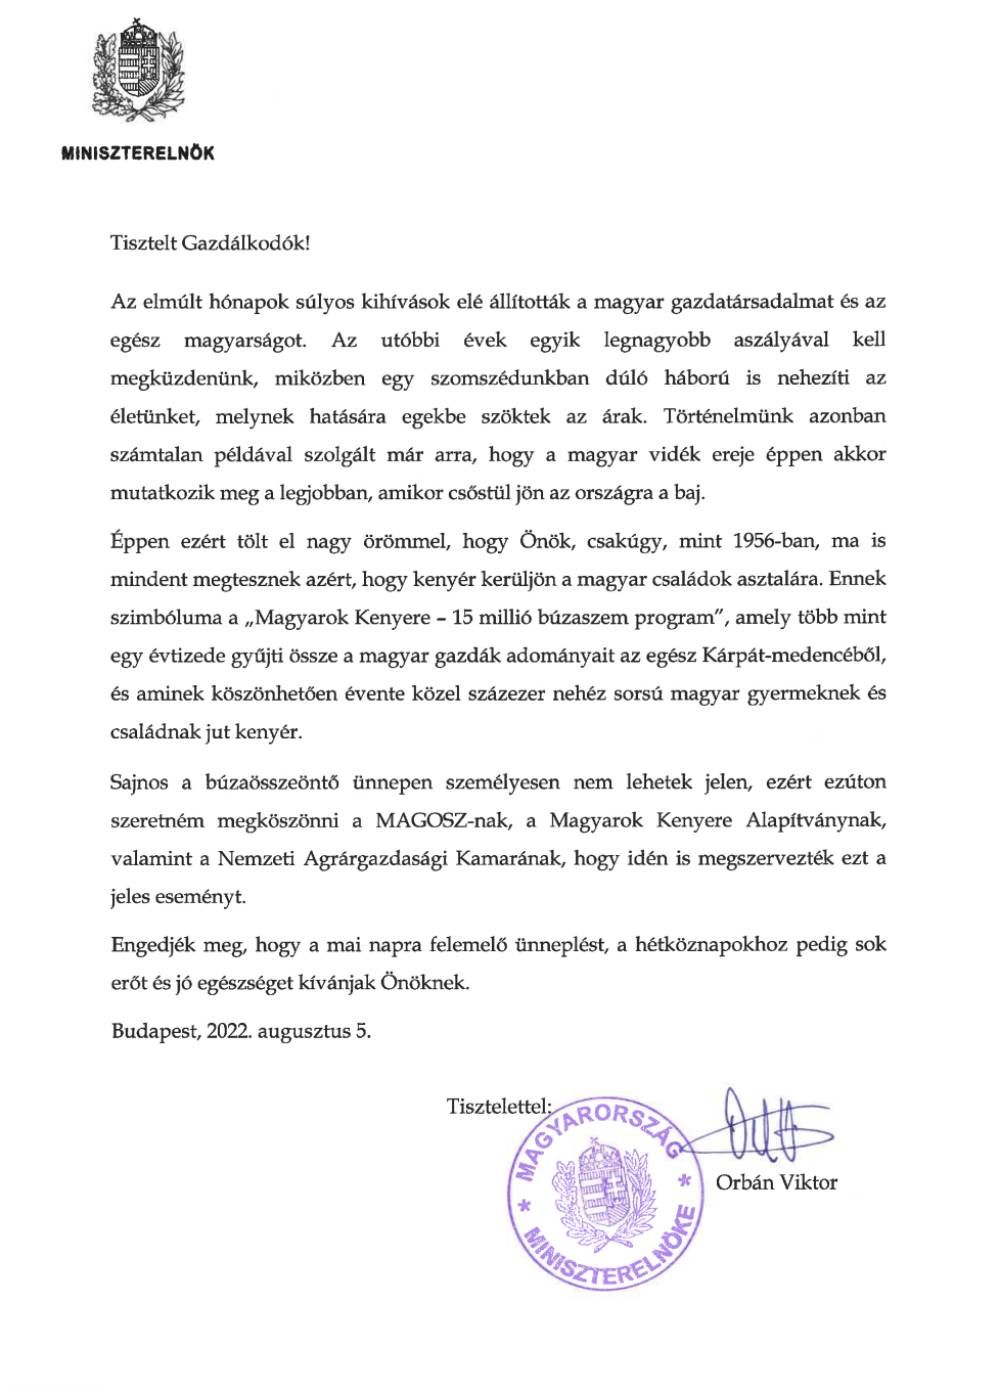 Orbán Viktor levele a gazdáknak, 2022 augusztus